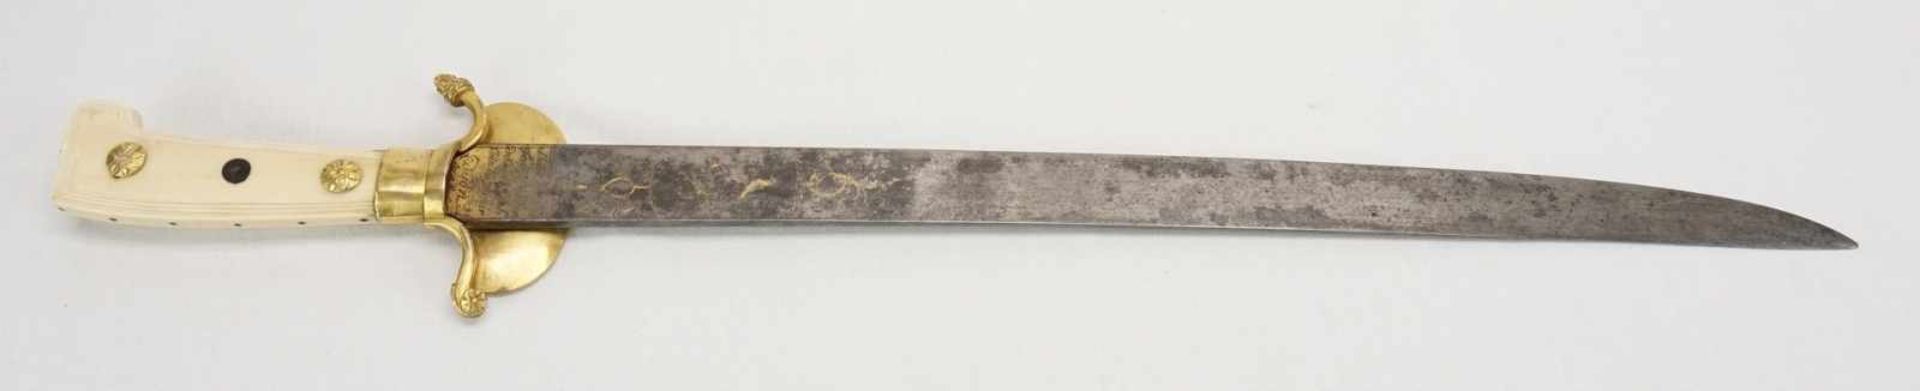 Hochwertige Jagdplaute, Dyon, um 1800Stahl und Messing, Stichblatt mit Gladiatorendarstellung und - Bild 2 aus 4